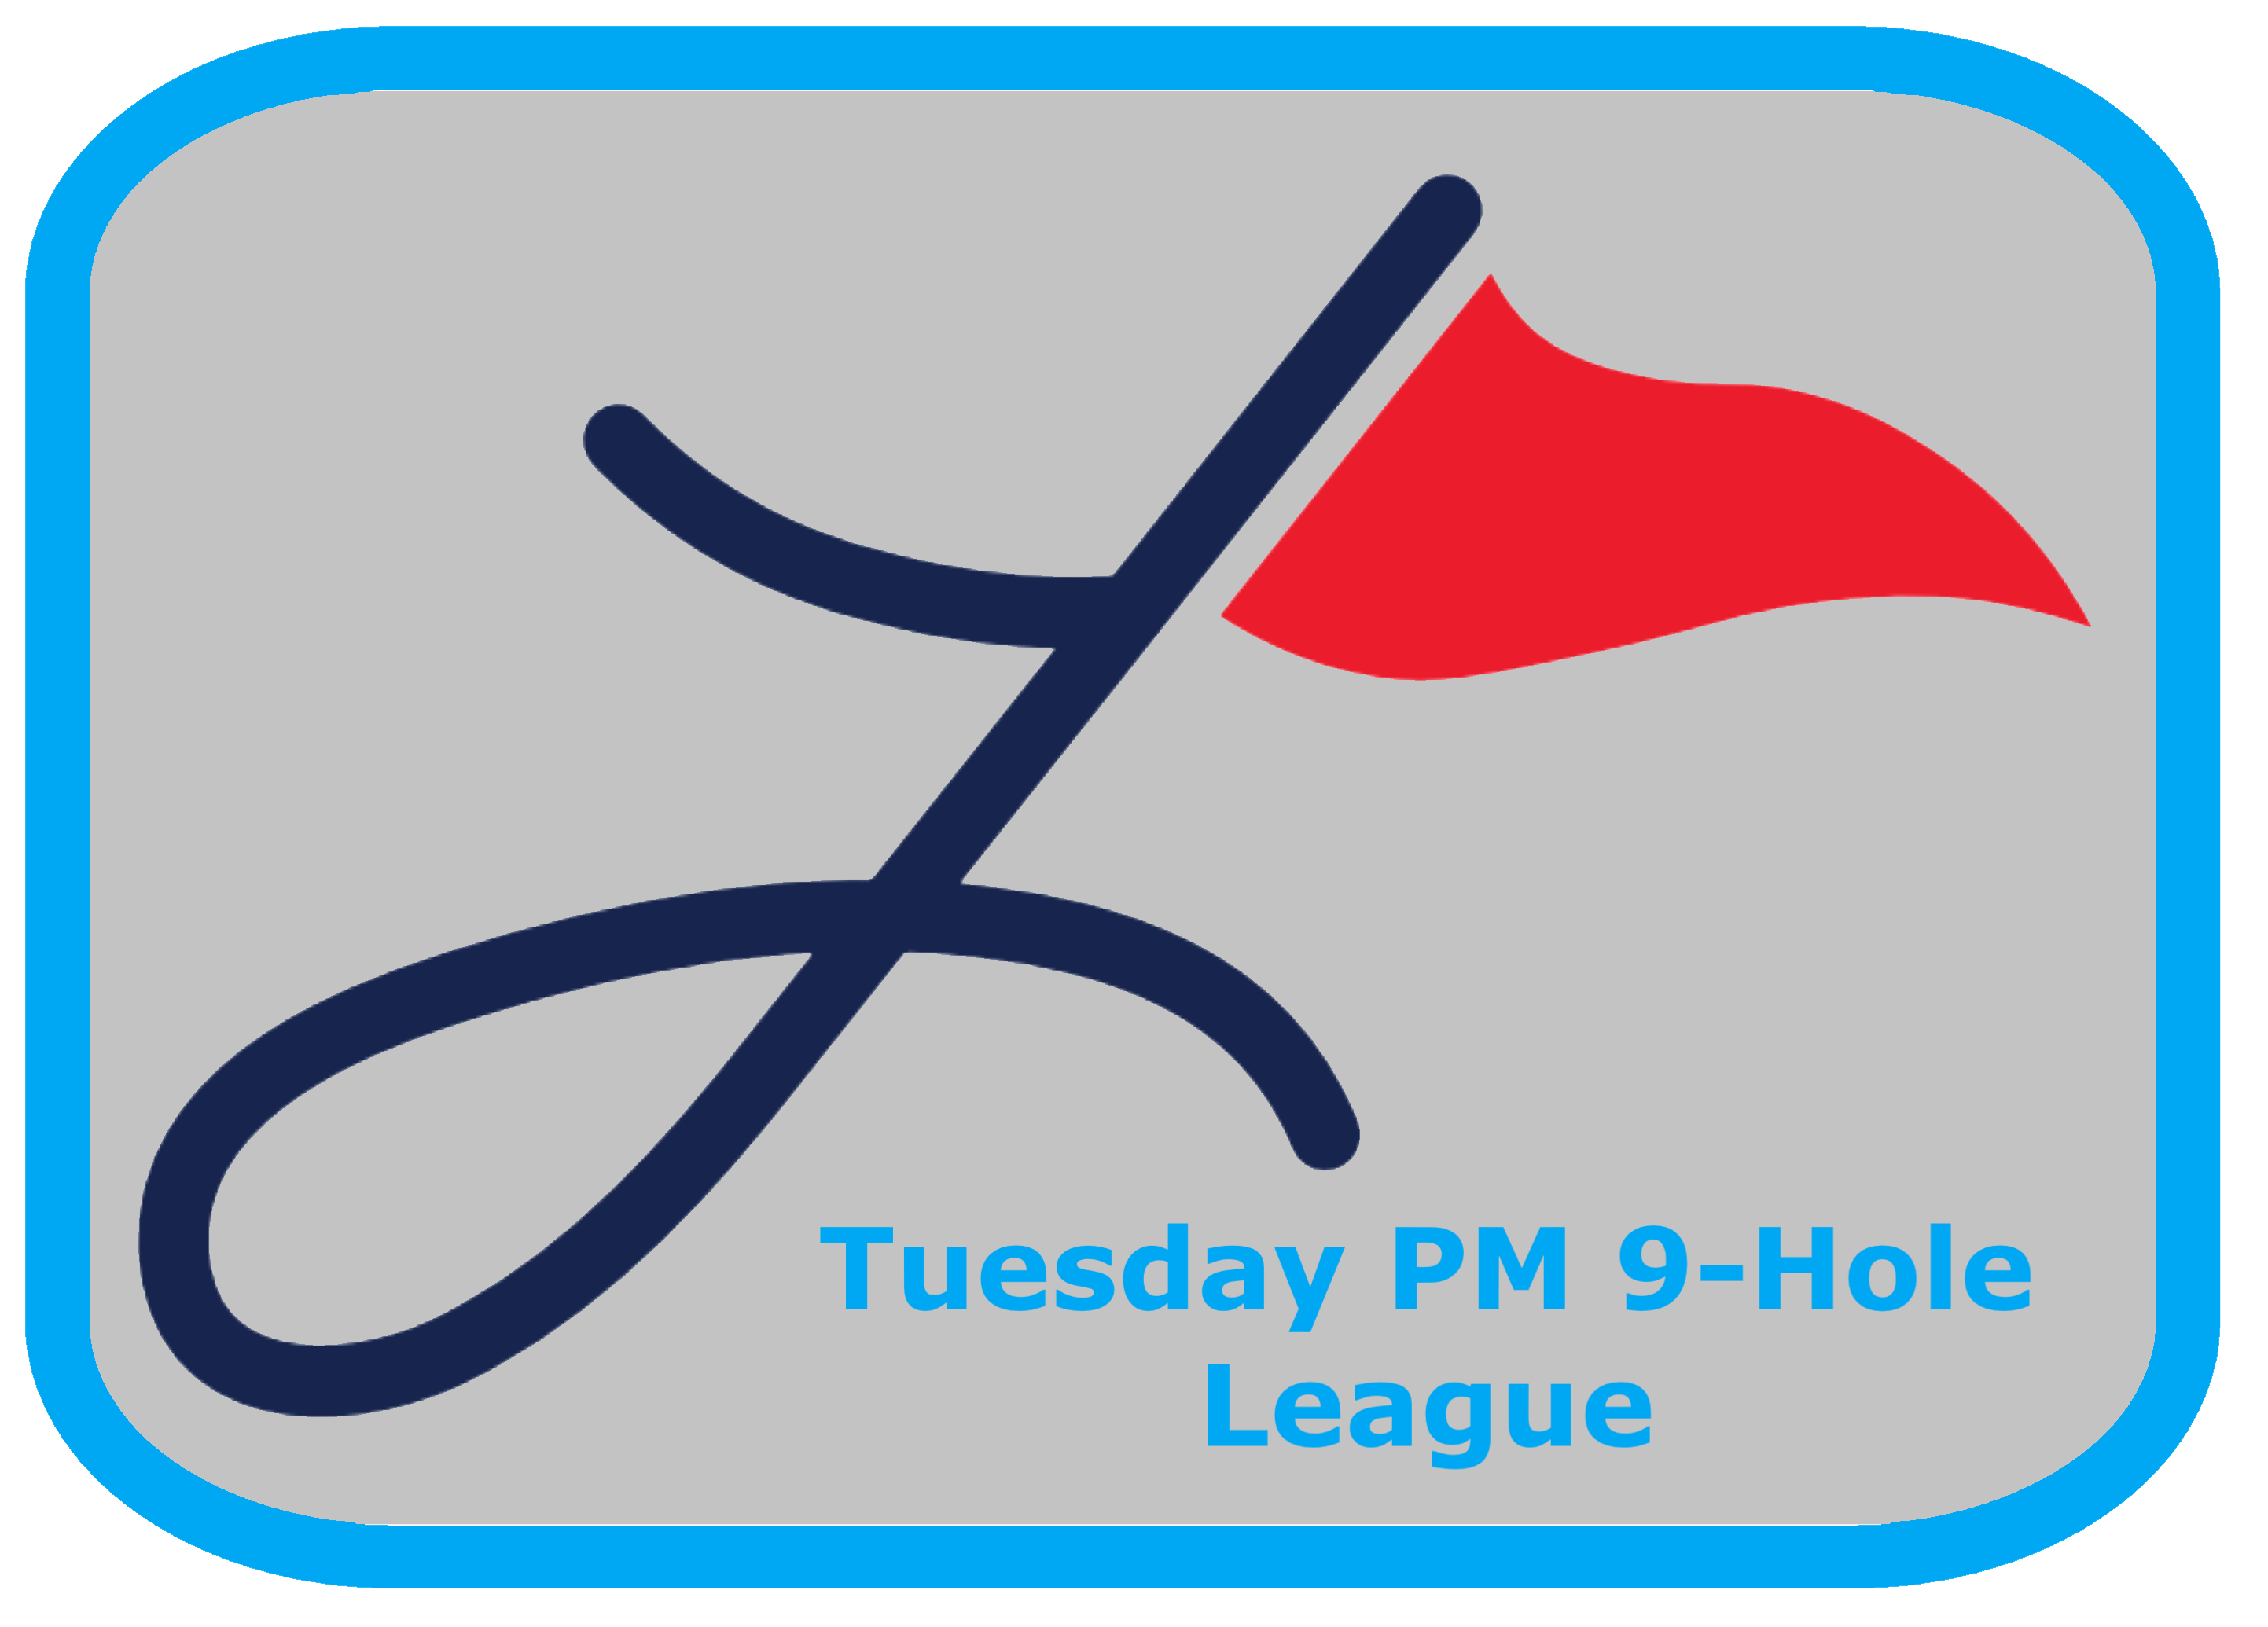 Men's Tuesday PM 9-Hole League